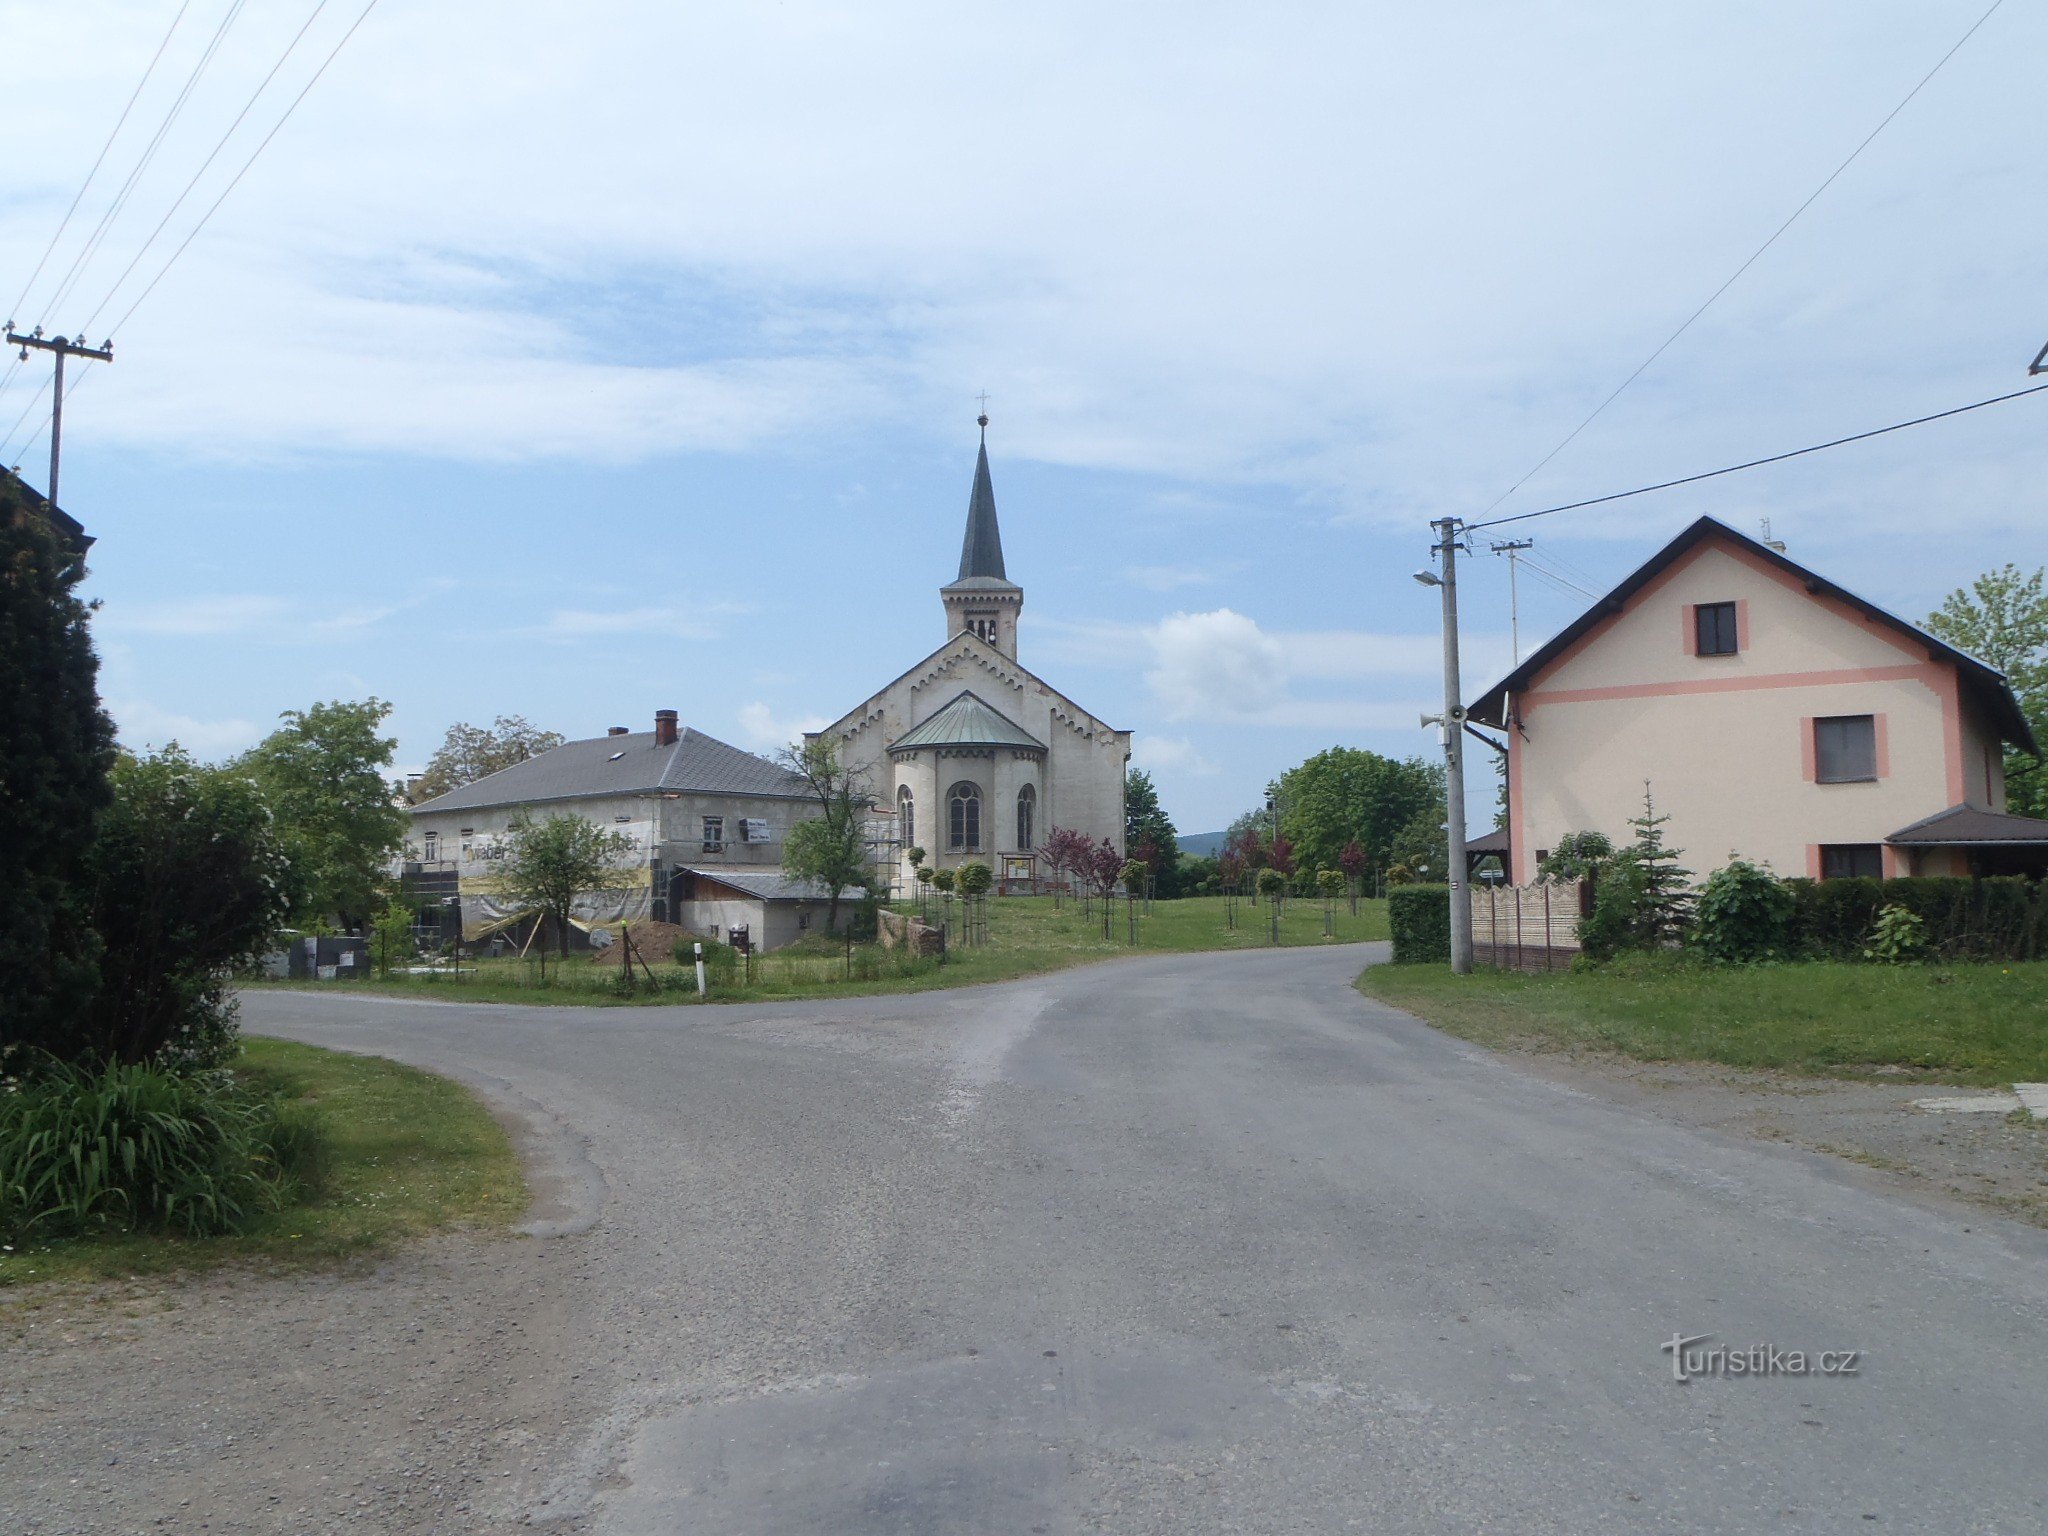 Cerkev od daleč